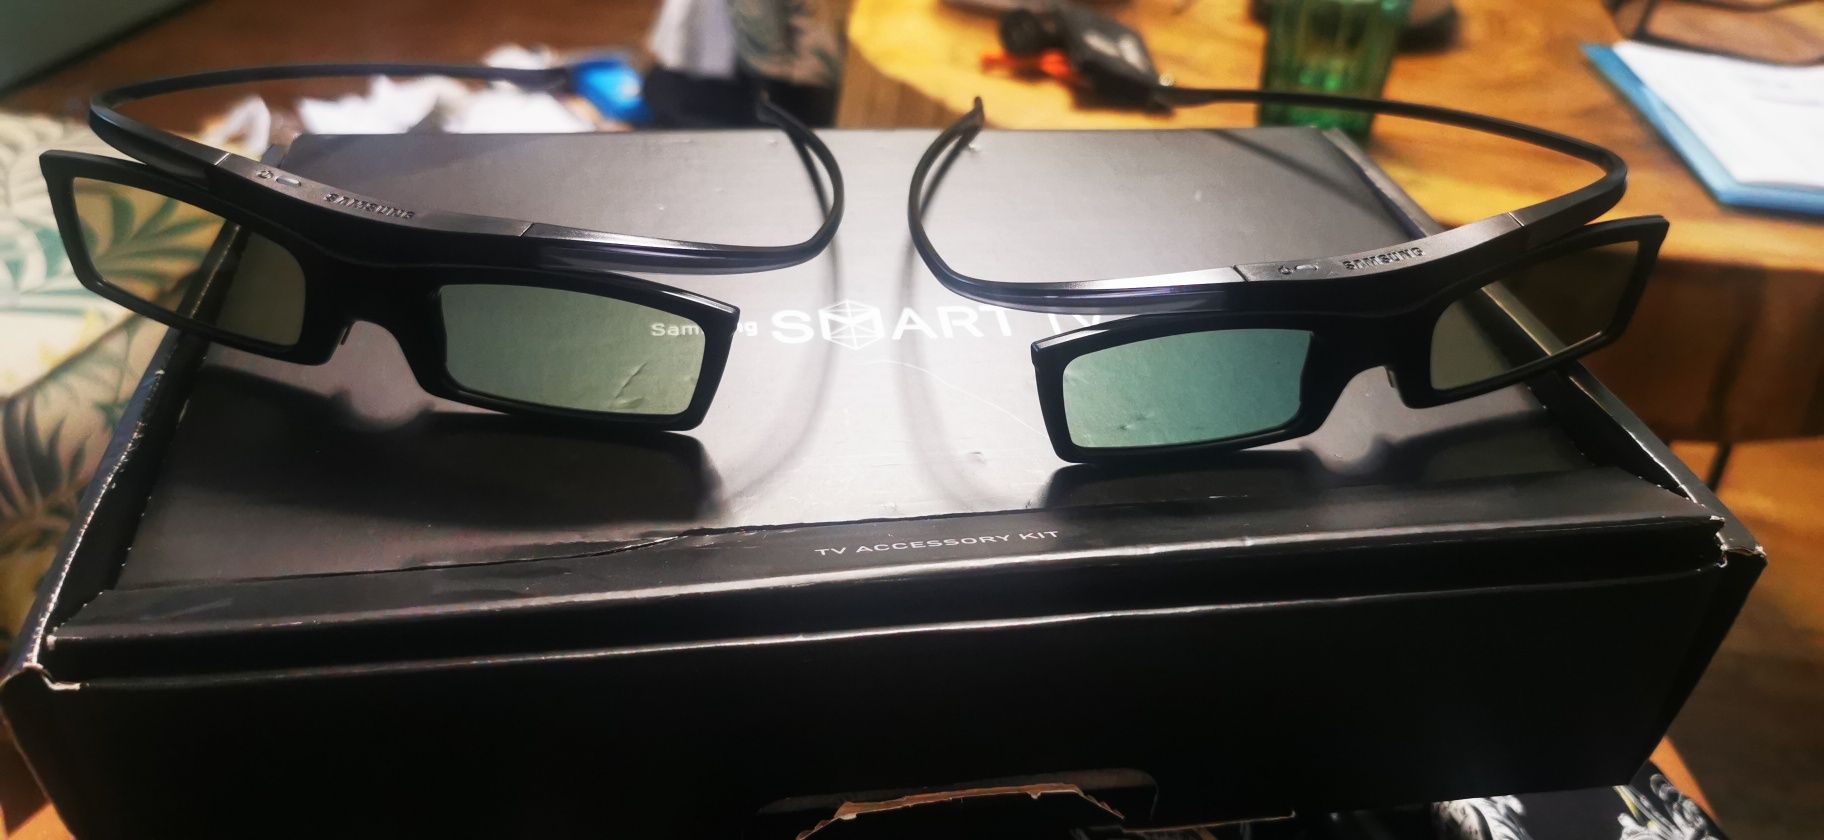 Okulary 3 D samsung nie używane